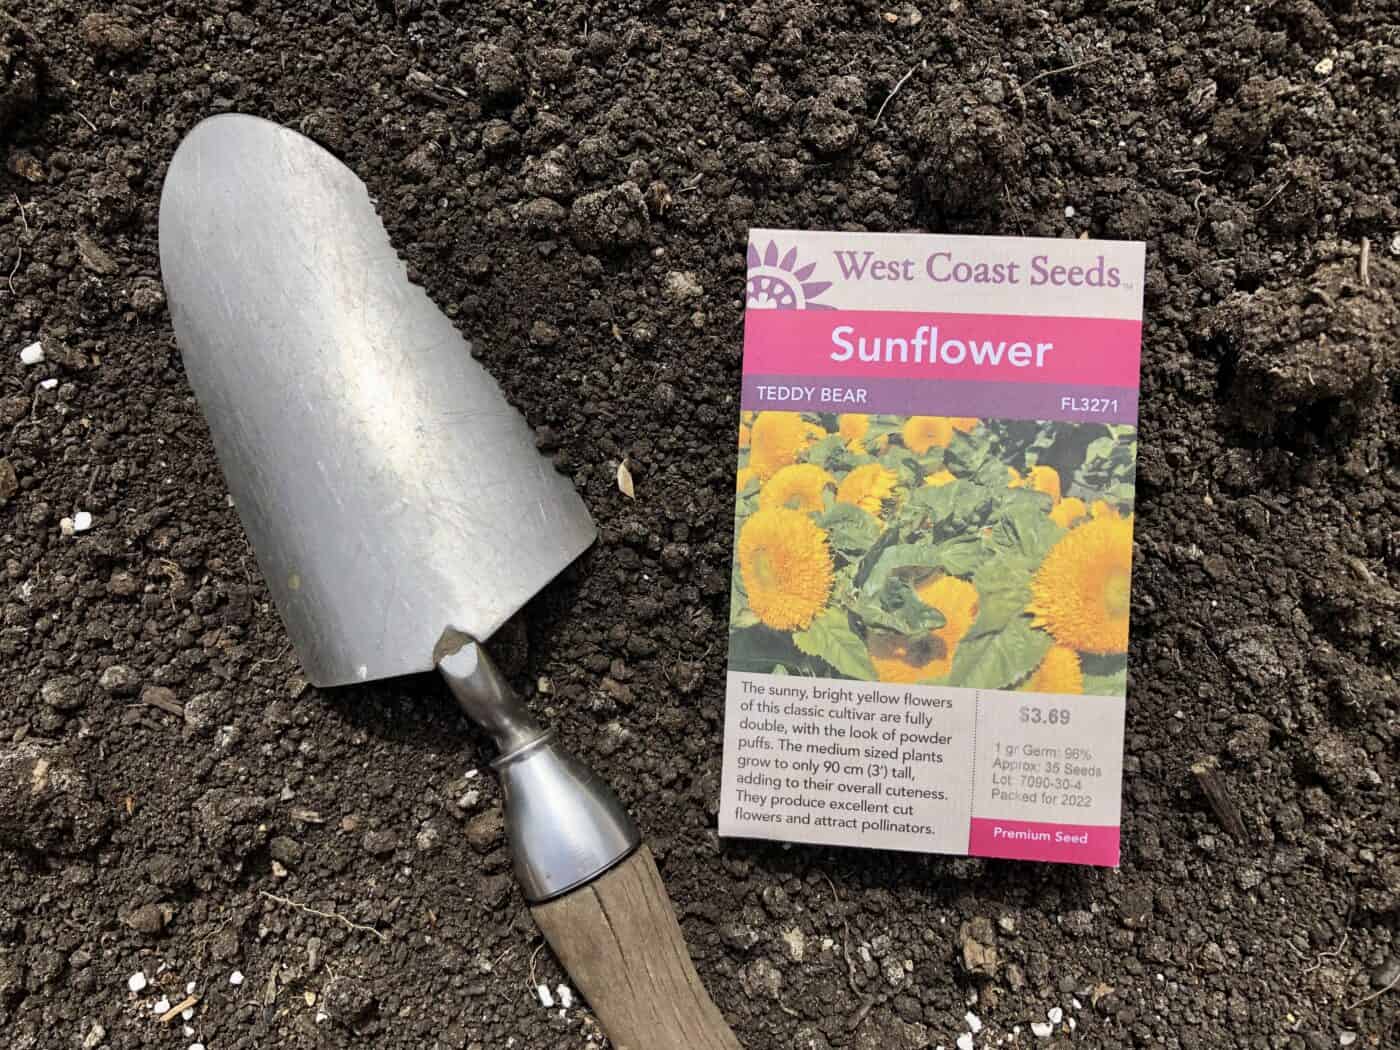 Planting sunflower seeds